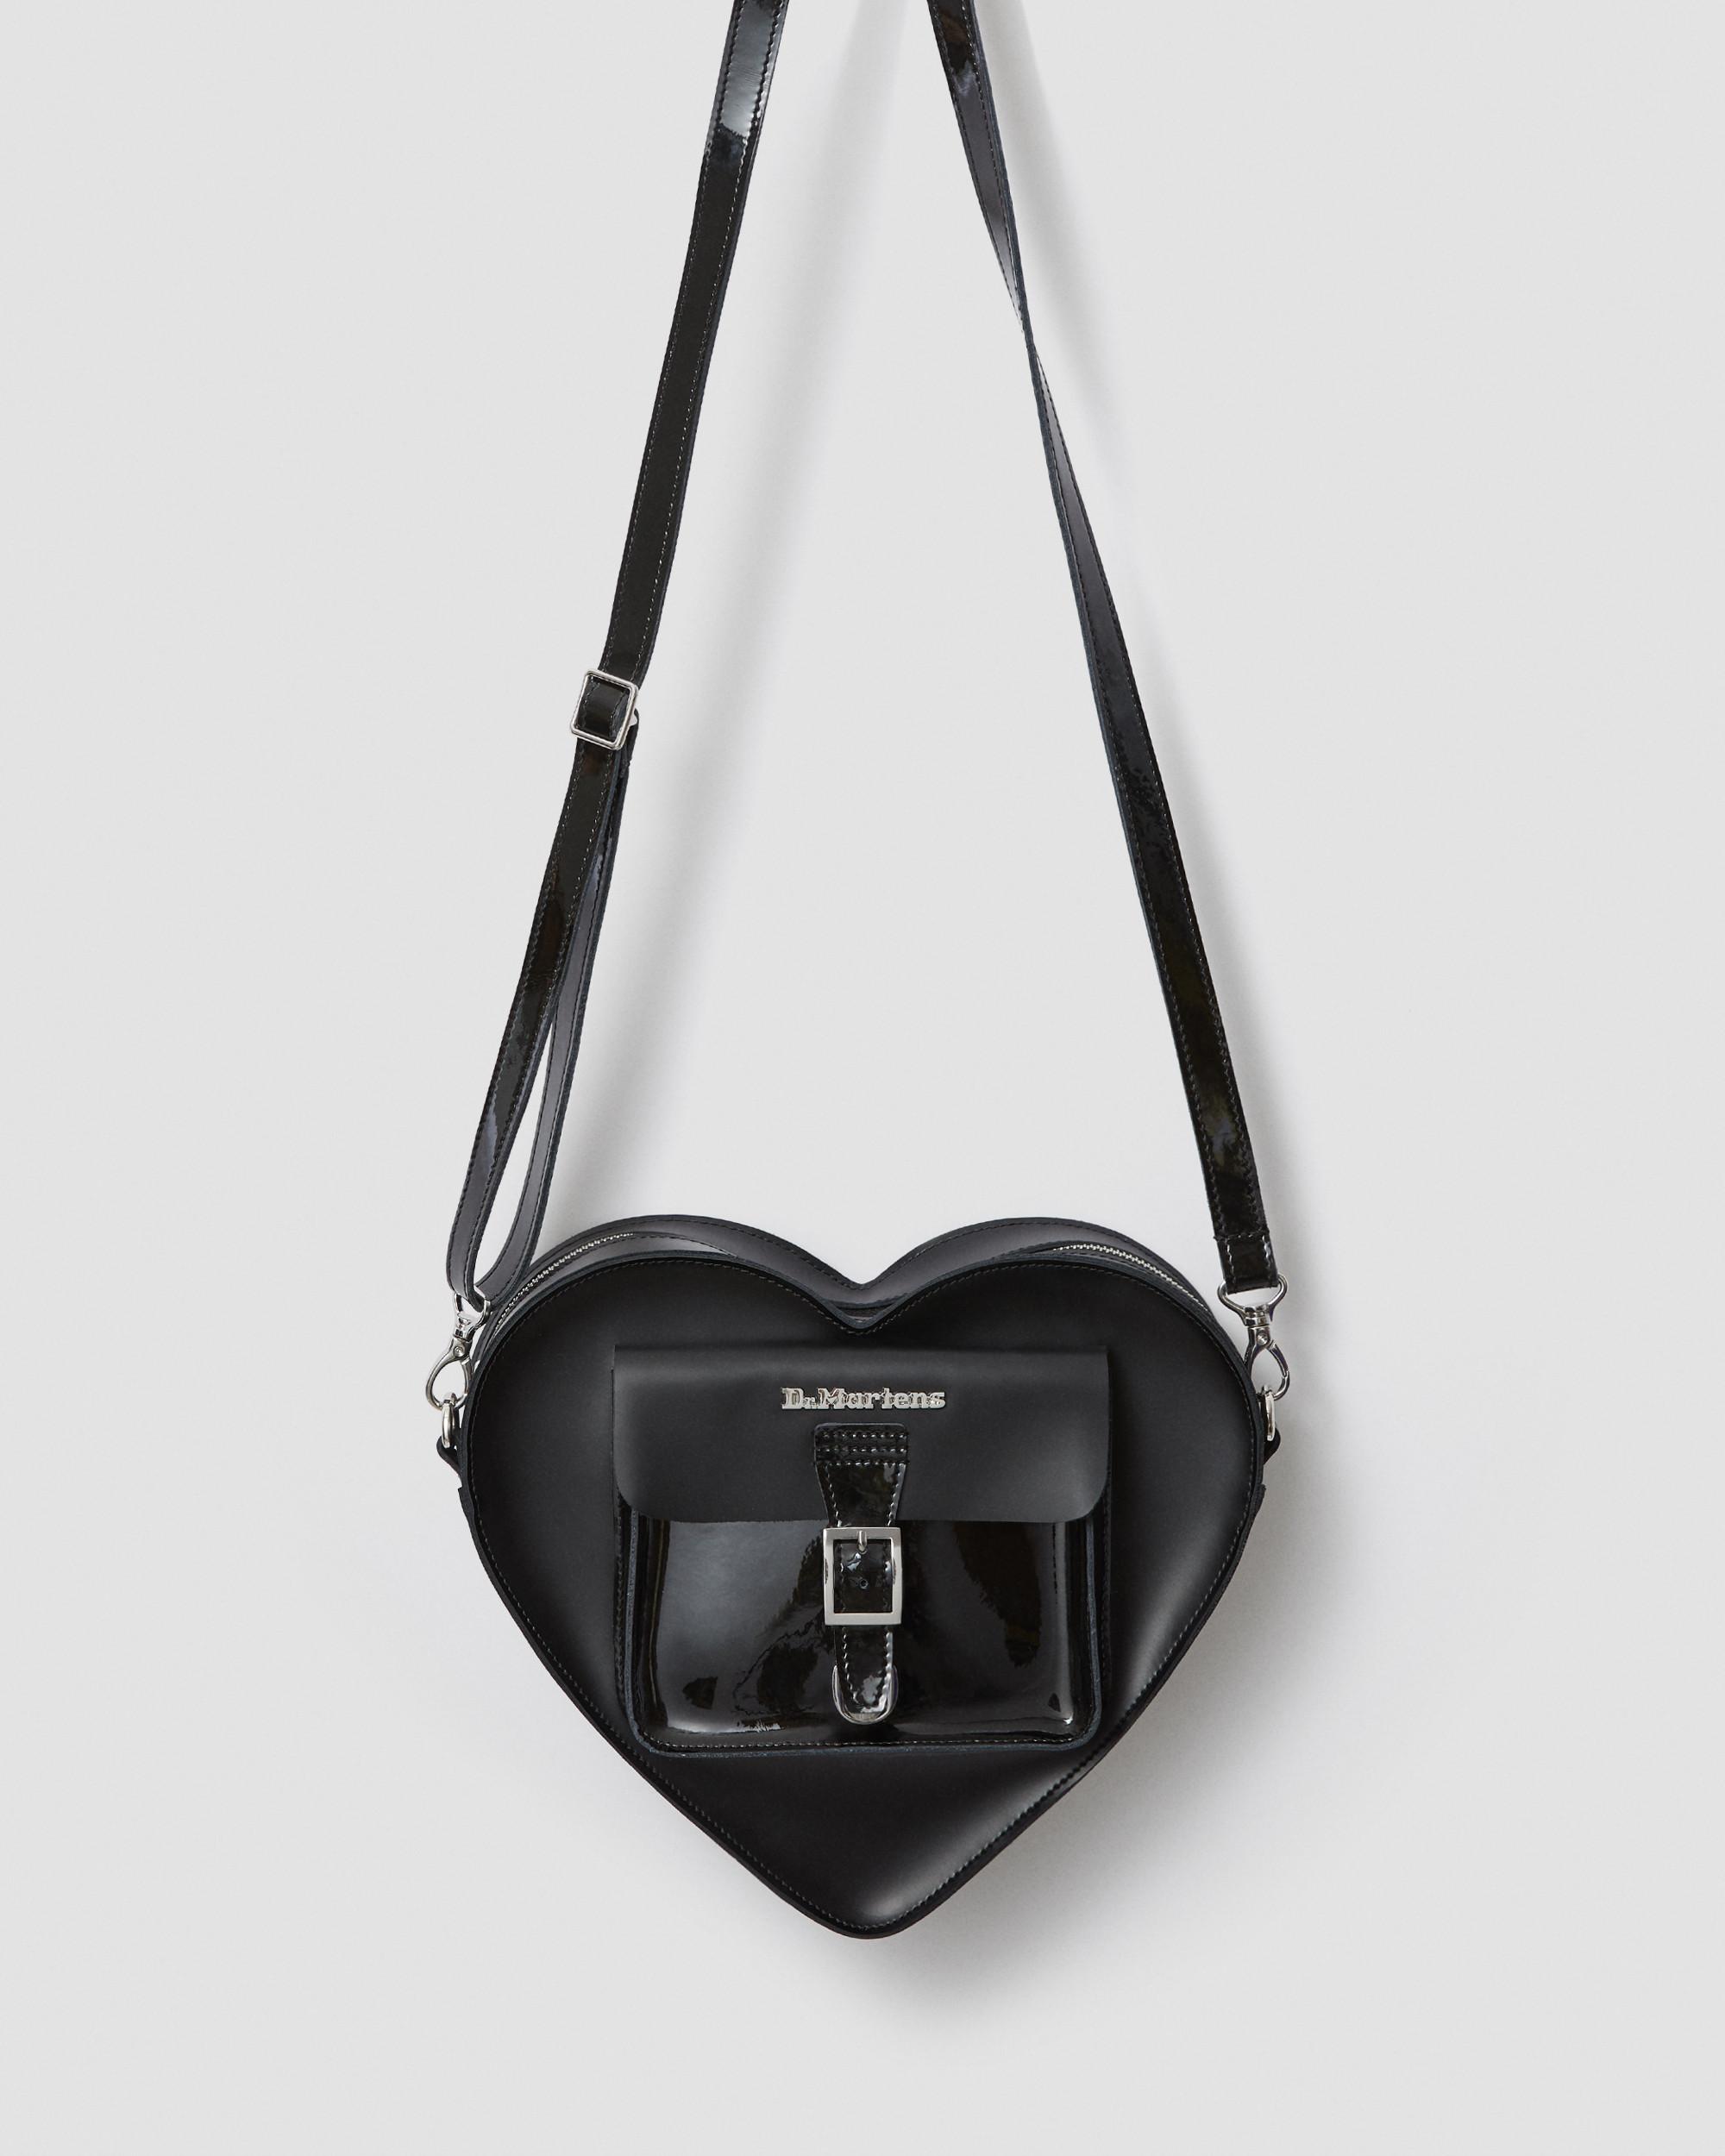 Leather Heart Shaped Bag, Black | Dr. Martens